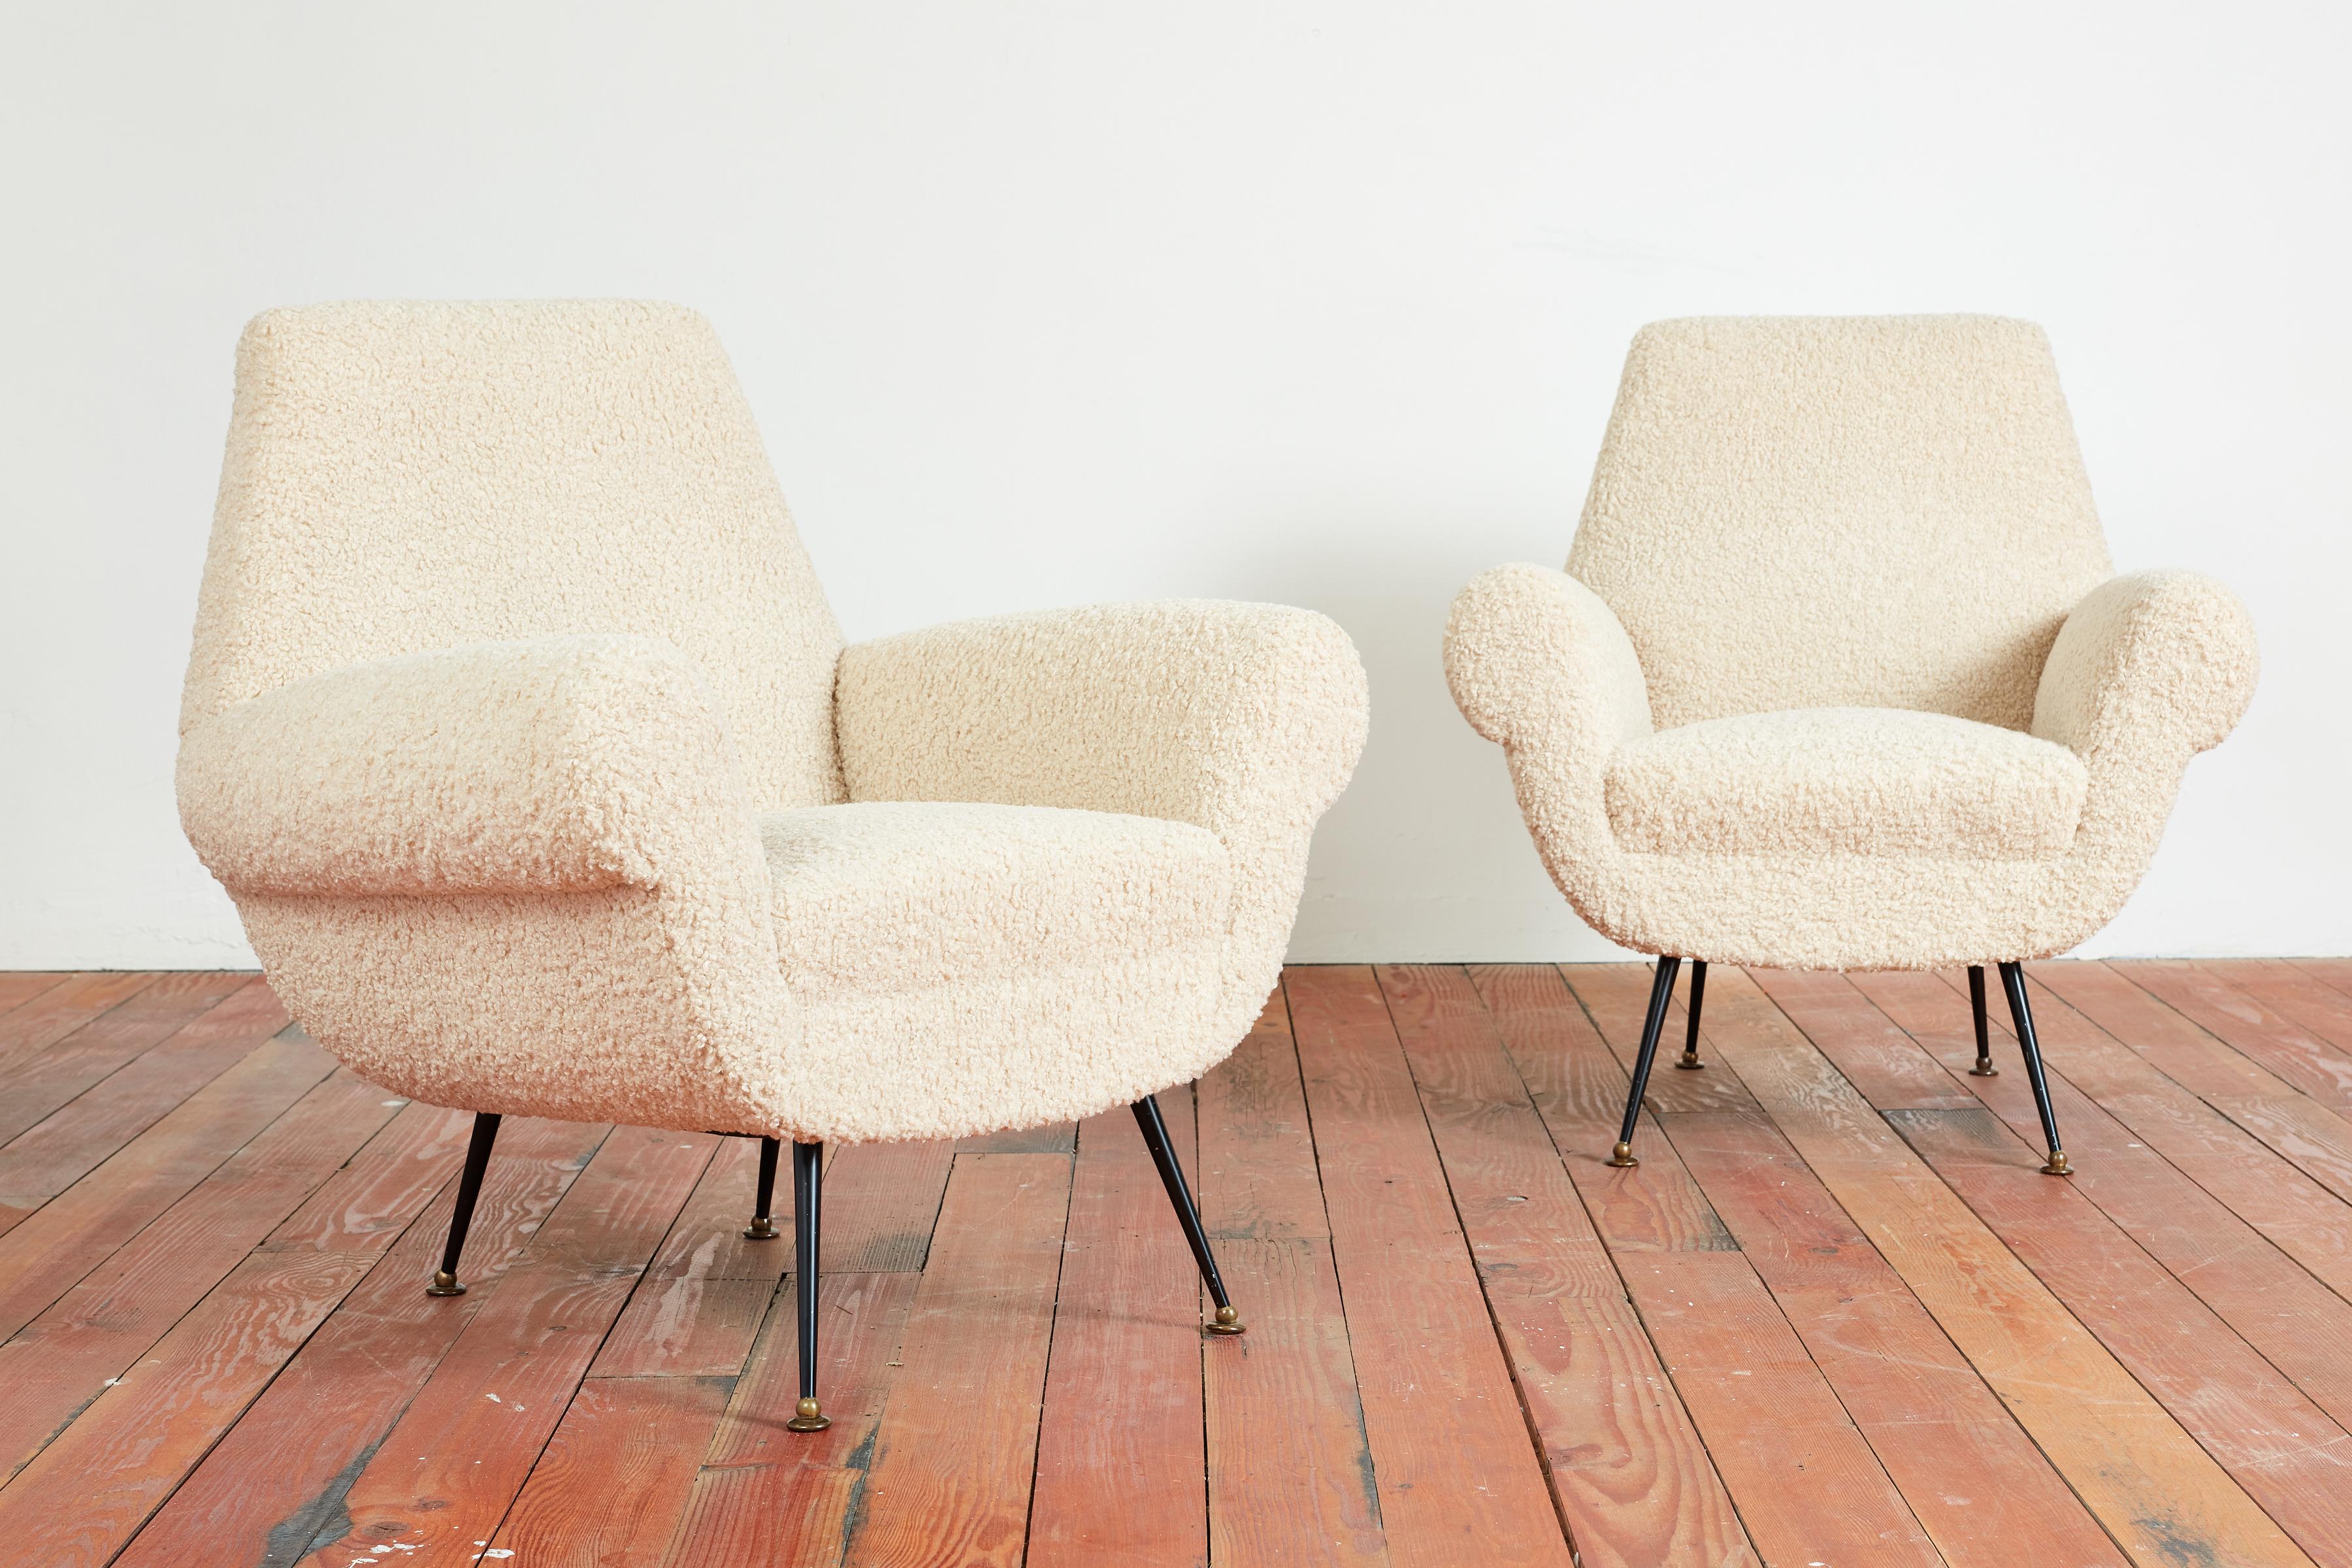 Paar Sessel von Gigi Radice für Minotti - Italien, 1950er Jahre
Neu gepolstert mit cremefarbenem Wollbouclé, mit originalen Eisenbeinen und Messingfüßen.
Großartige geschwungene Form 
Passendes Sofa verfügbar.